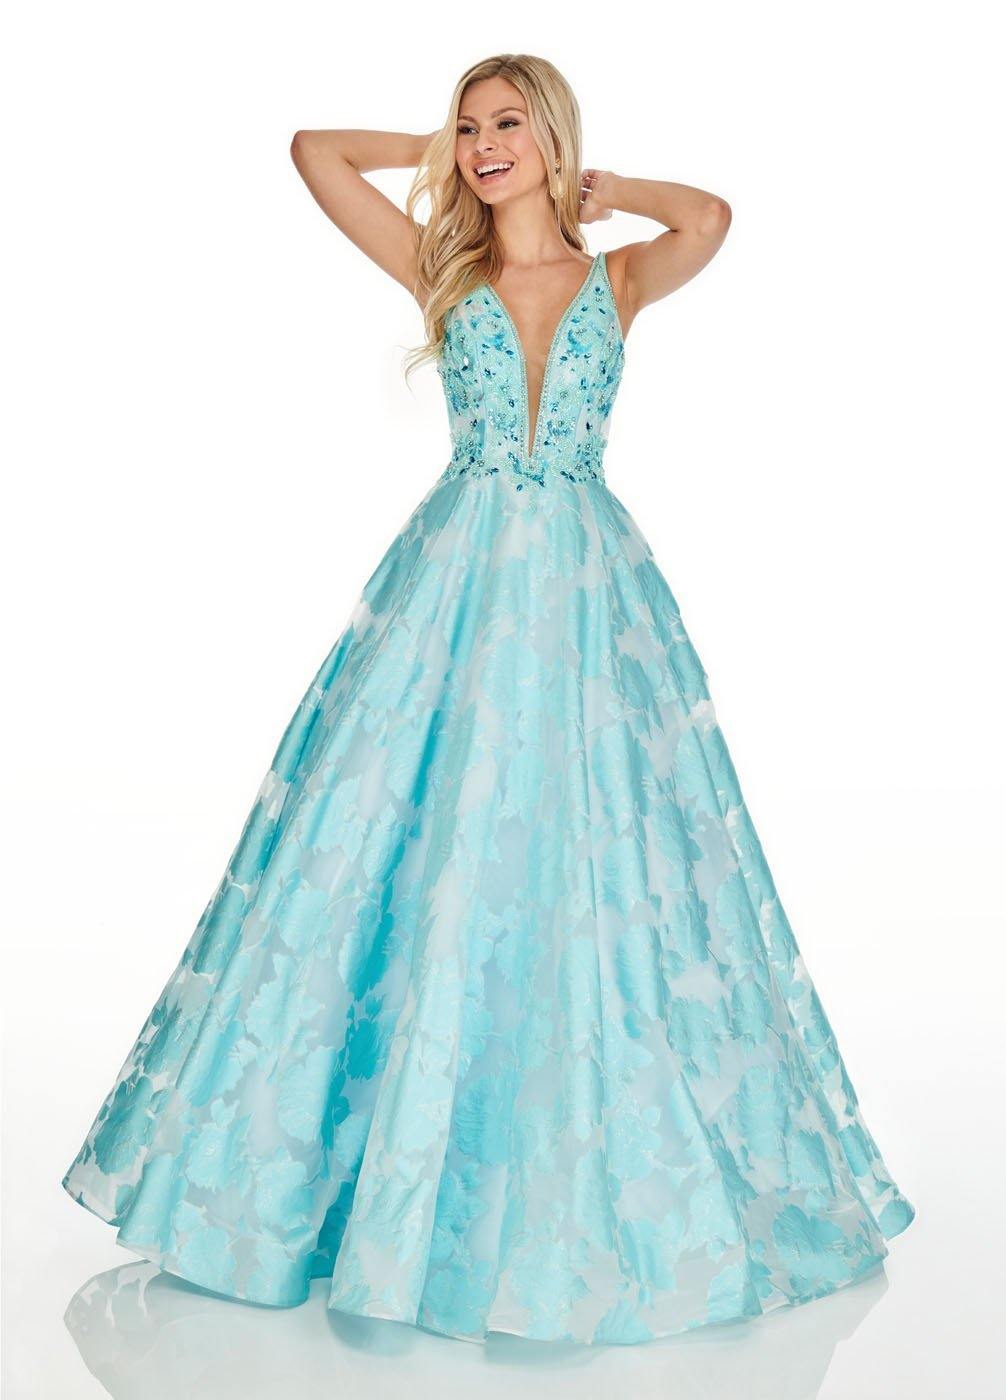 Rachel Allan Long Prom Dress Ball Gown - The Dress Outlet